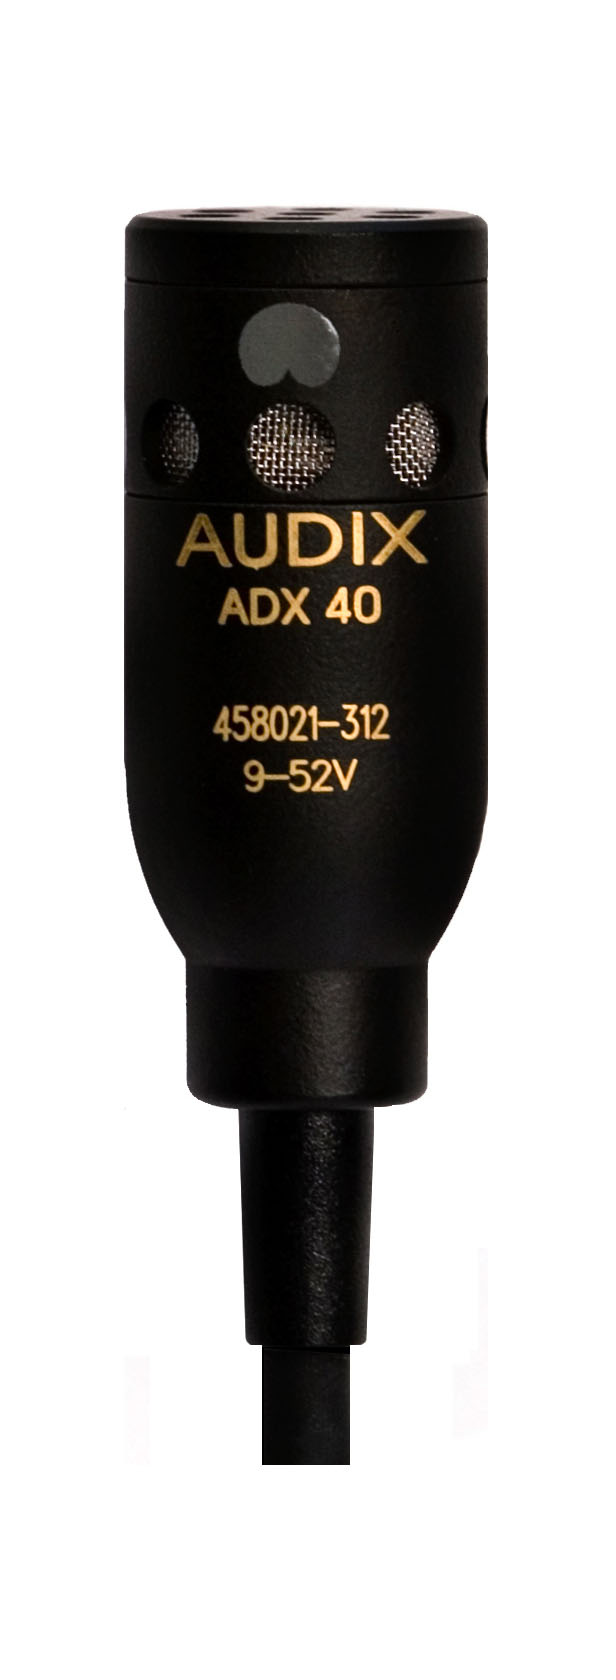 Специальные микрофоны AUDIX ADX40 конденсаторный микрофон mobicent bm 800 с ветрозащитой кабелем и переходником